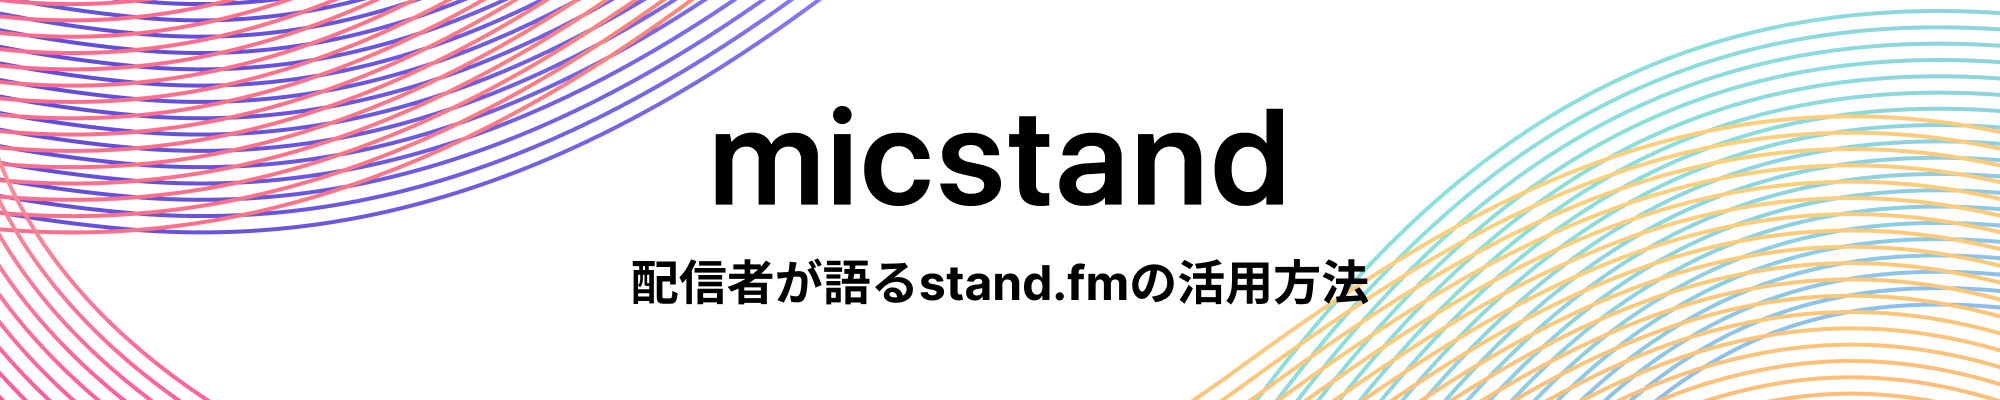 mic stand stand.fmの活用方法を配信者の皆さんが語ります。